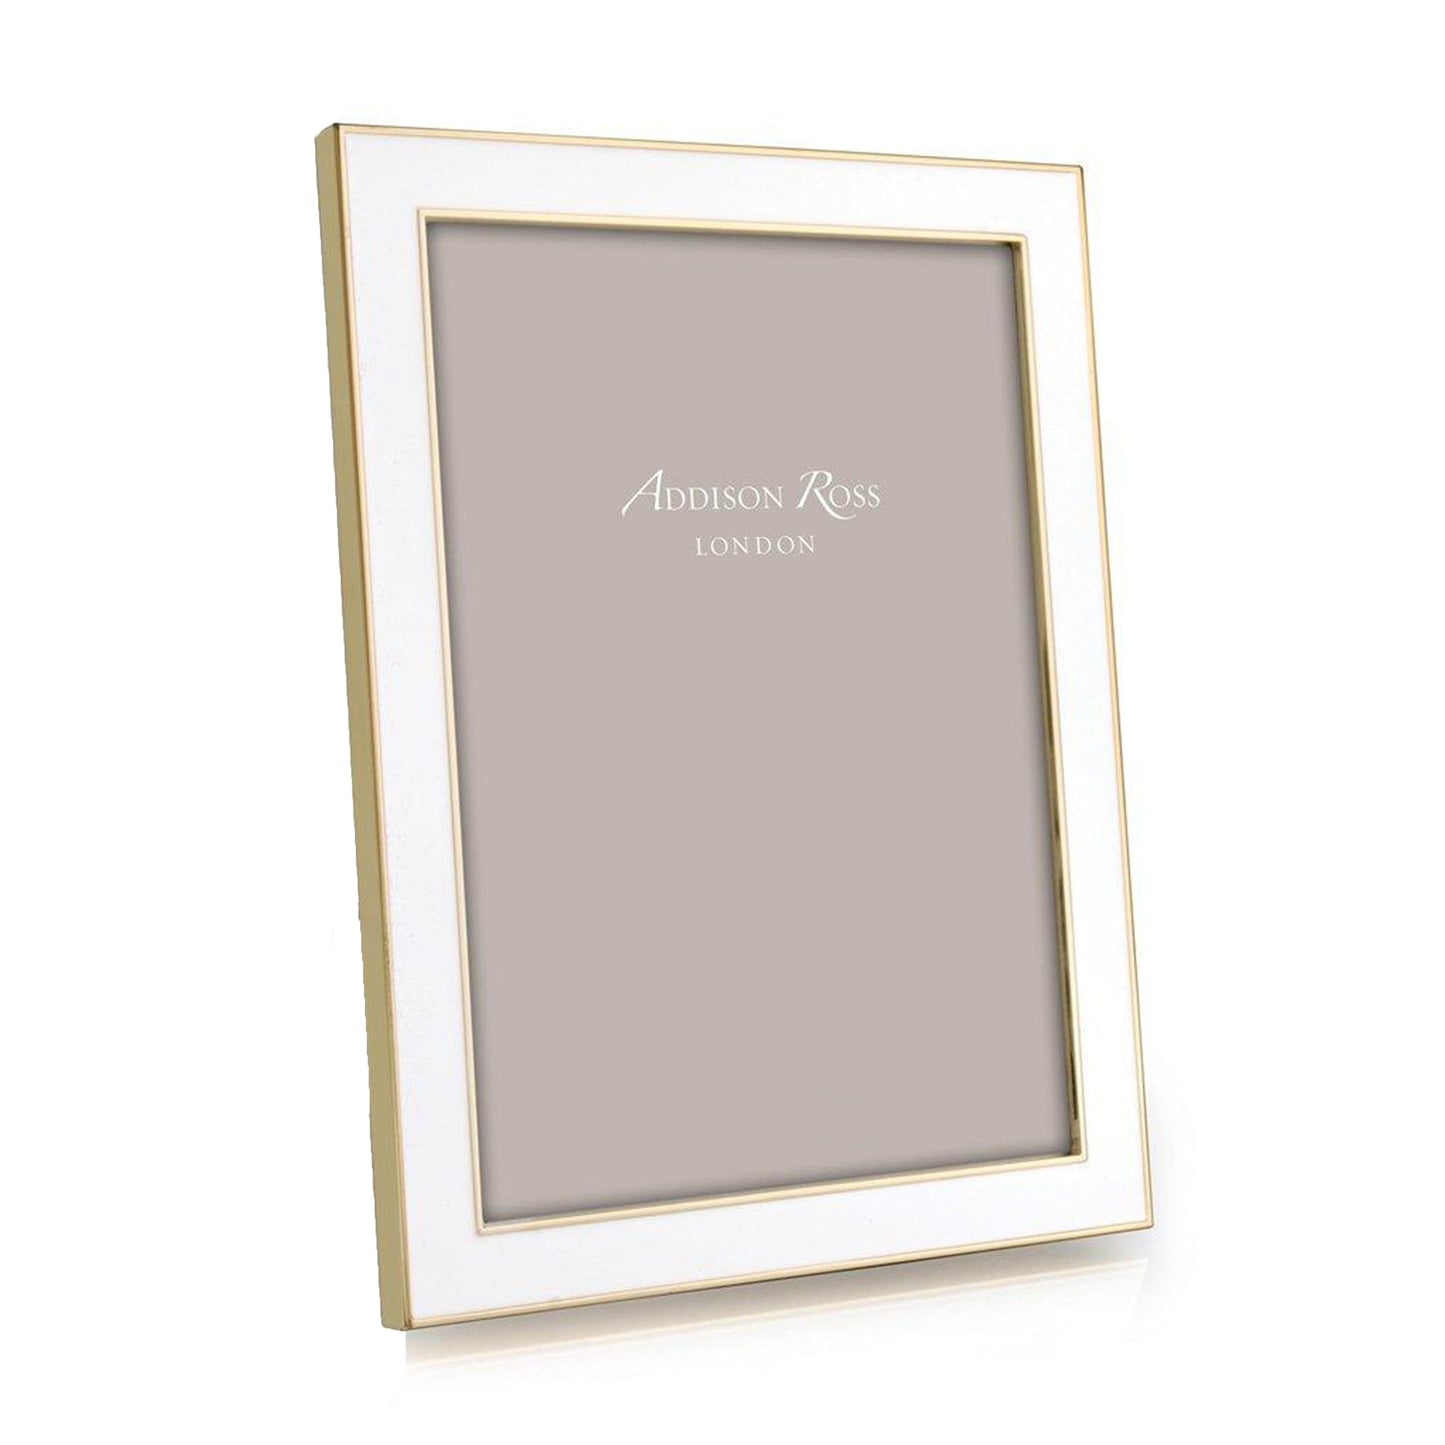 White Enamel & Gold Frame - Addison Ross Ltd UK